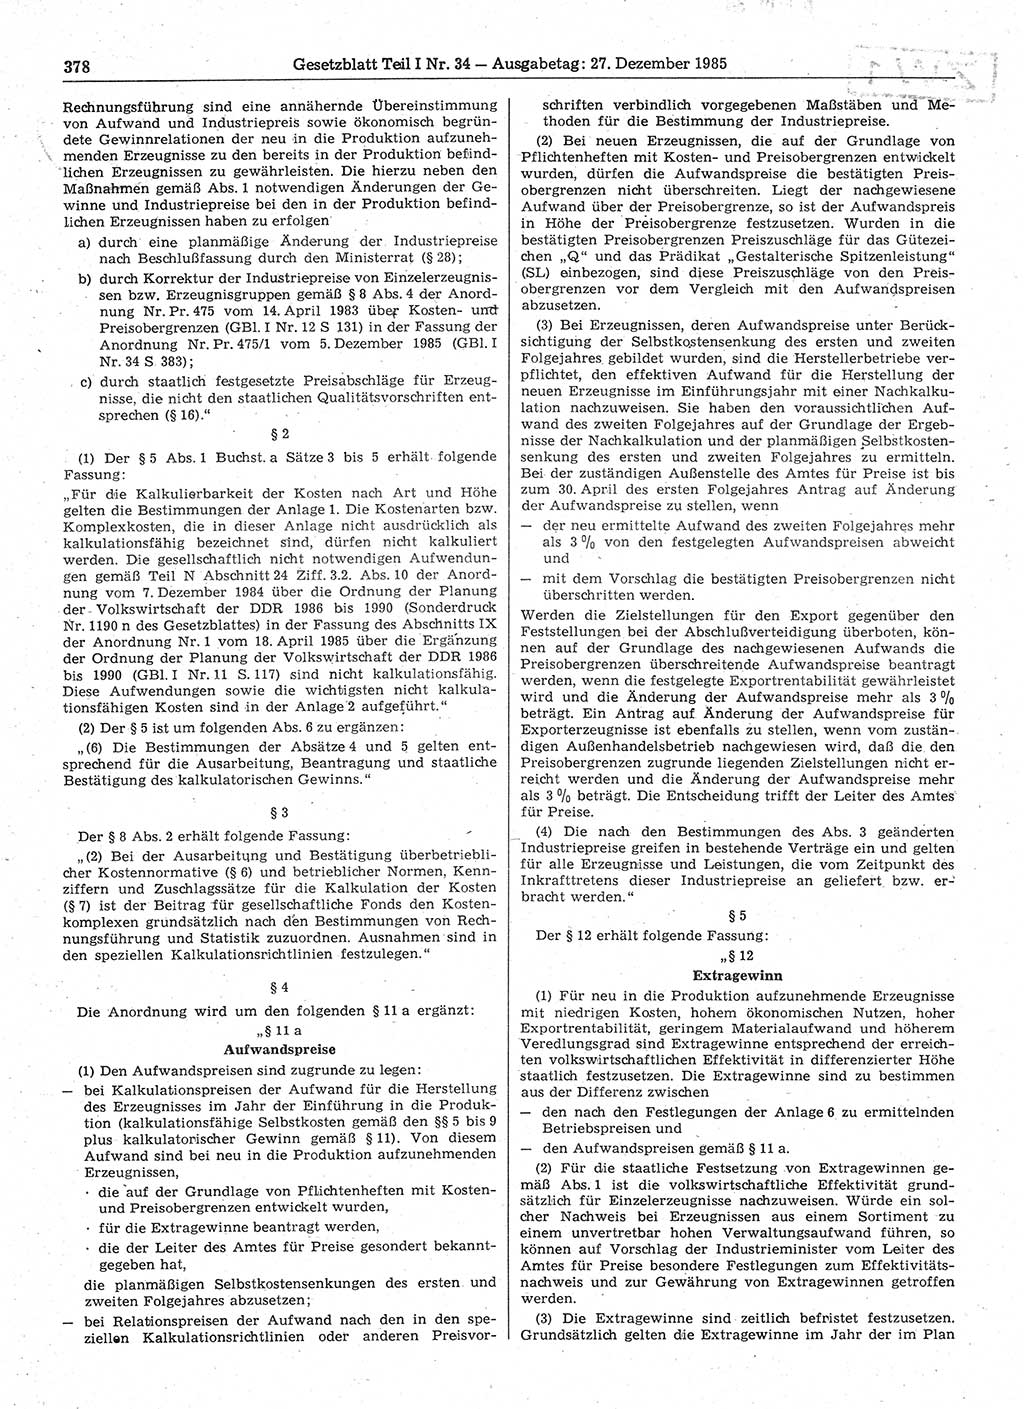 Gesetzblatt (GBl.) der Deutschen Demokratischen Republik (DDR) Teil Ⅰ 1985, Seite 378 (GBl. DDR Ⅰ 1985, S. 378)